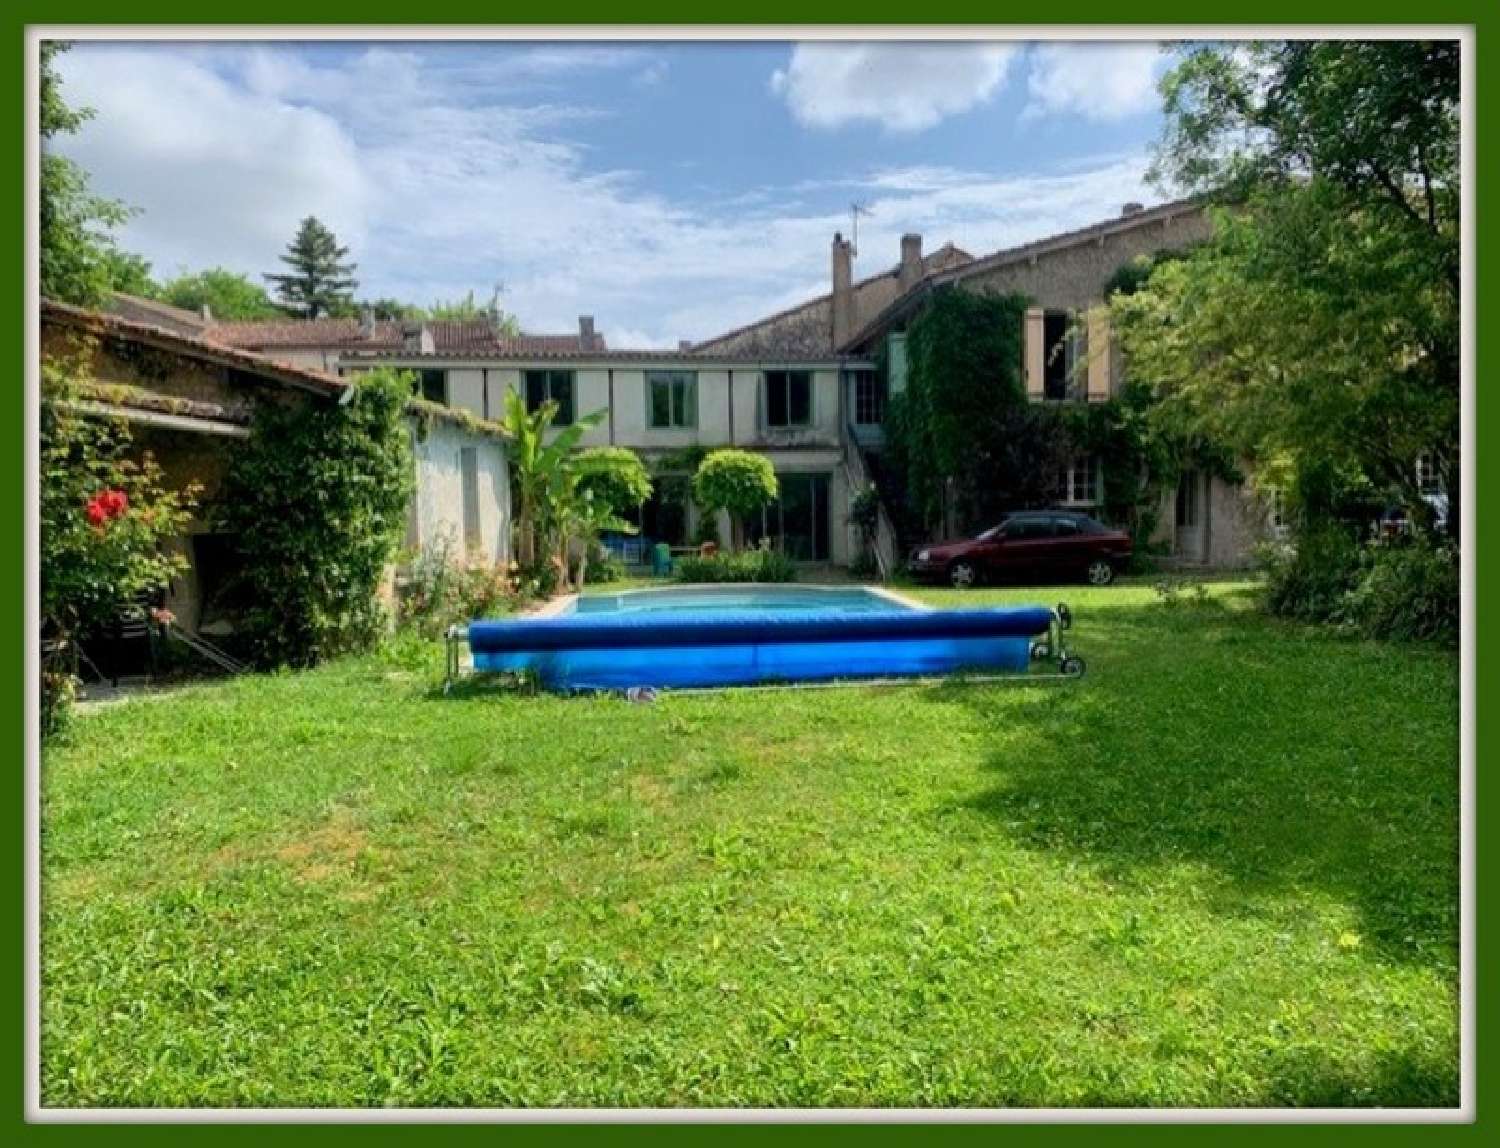  for sale village house Porcheresse Charente 1